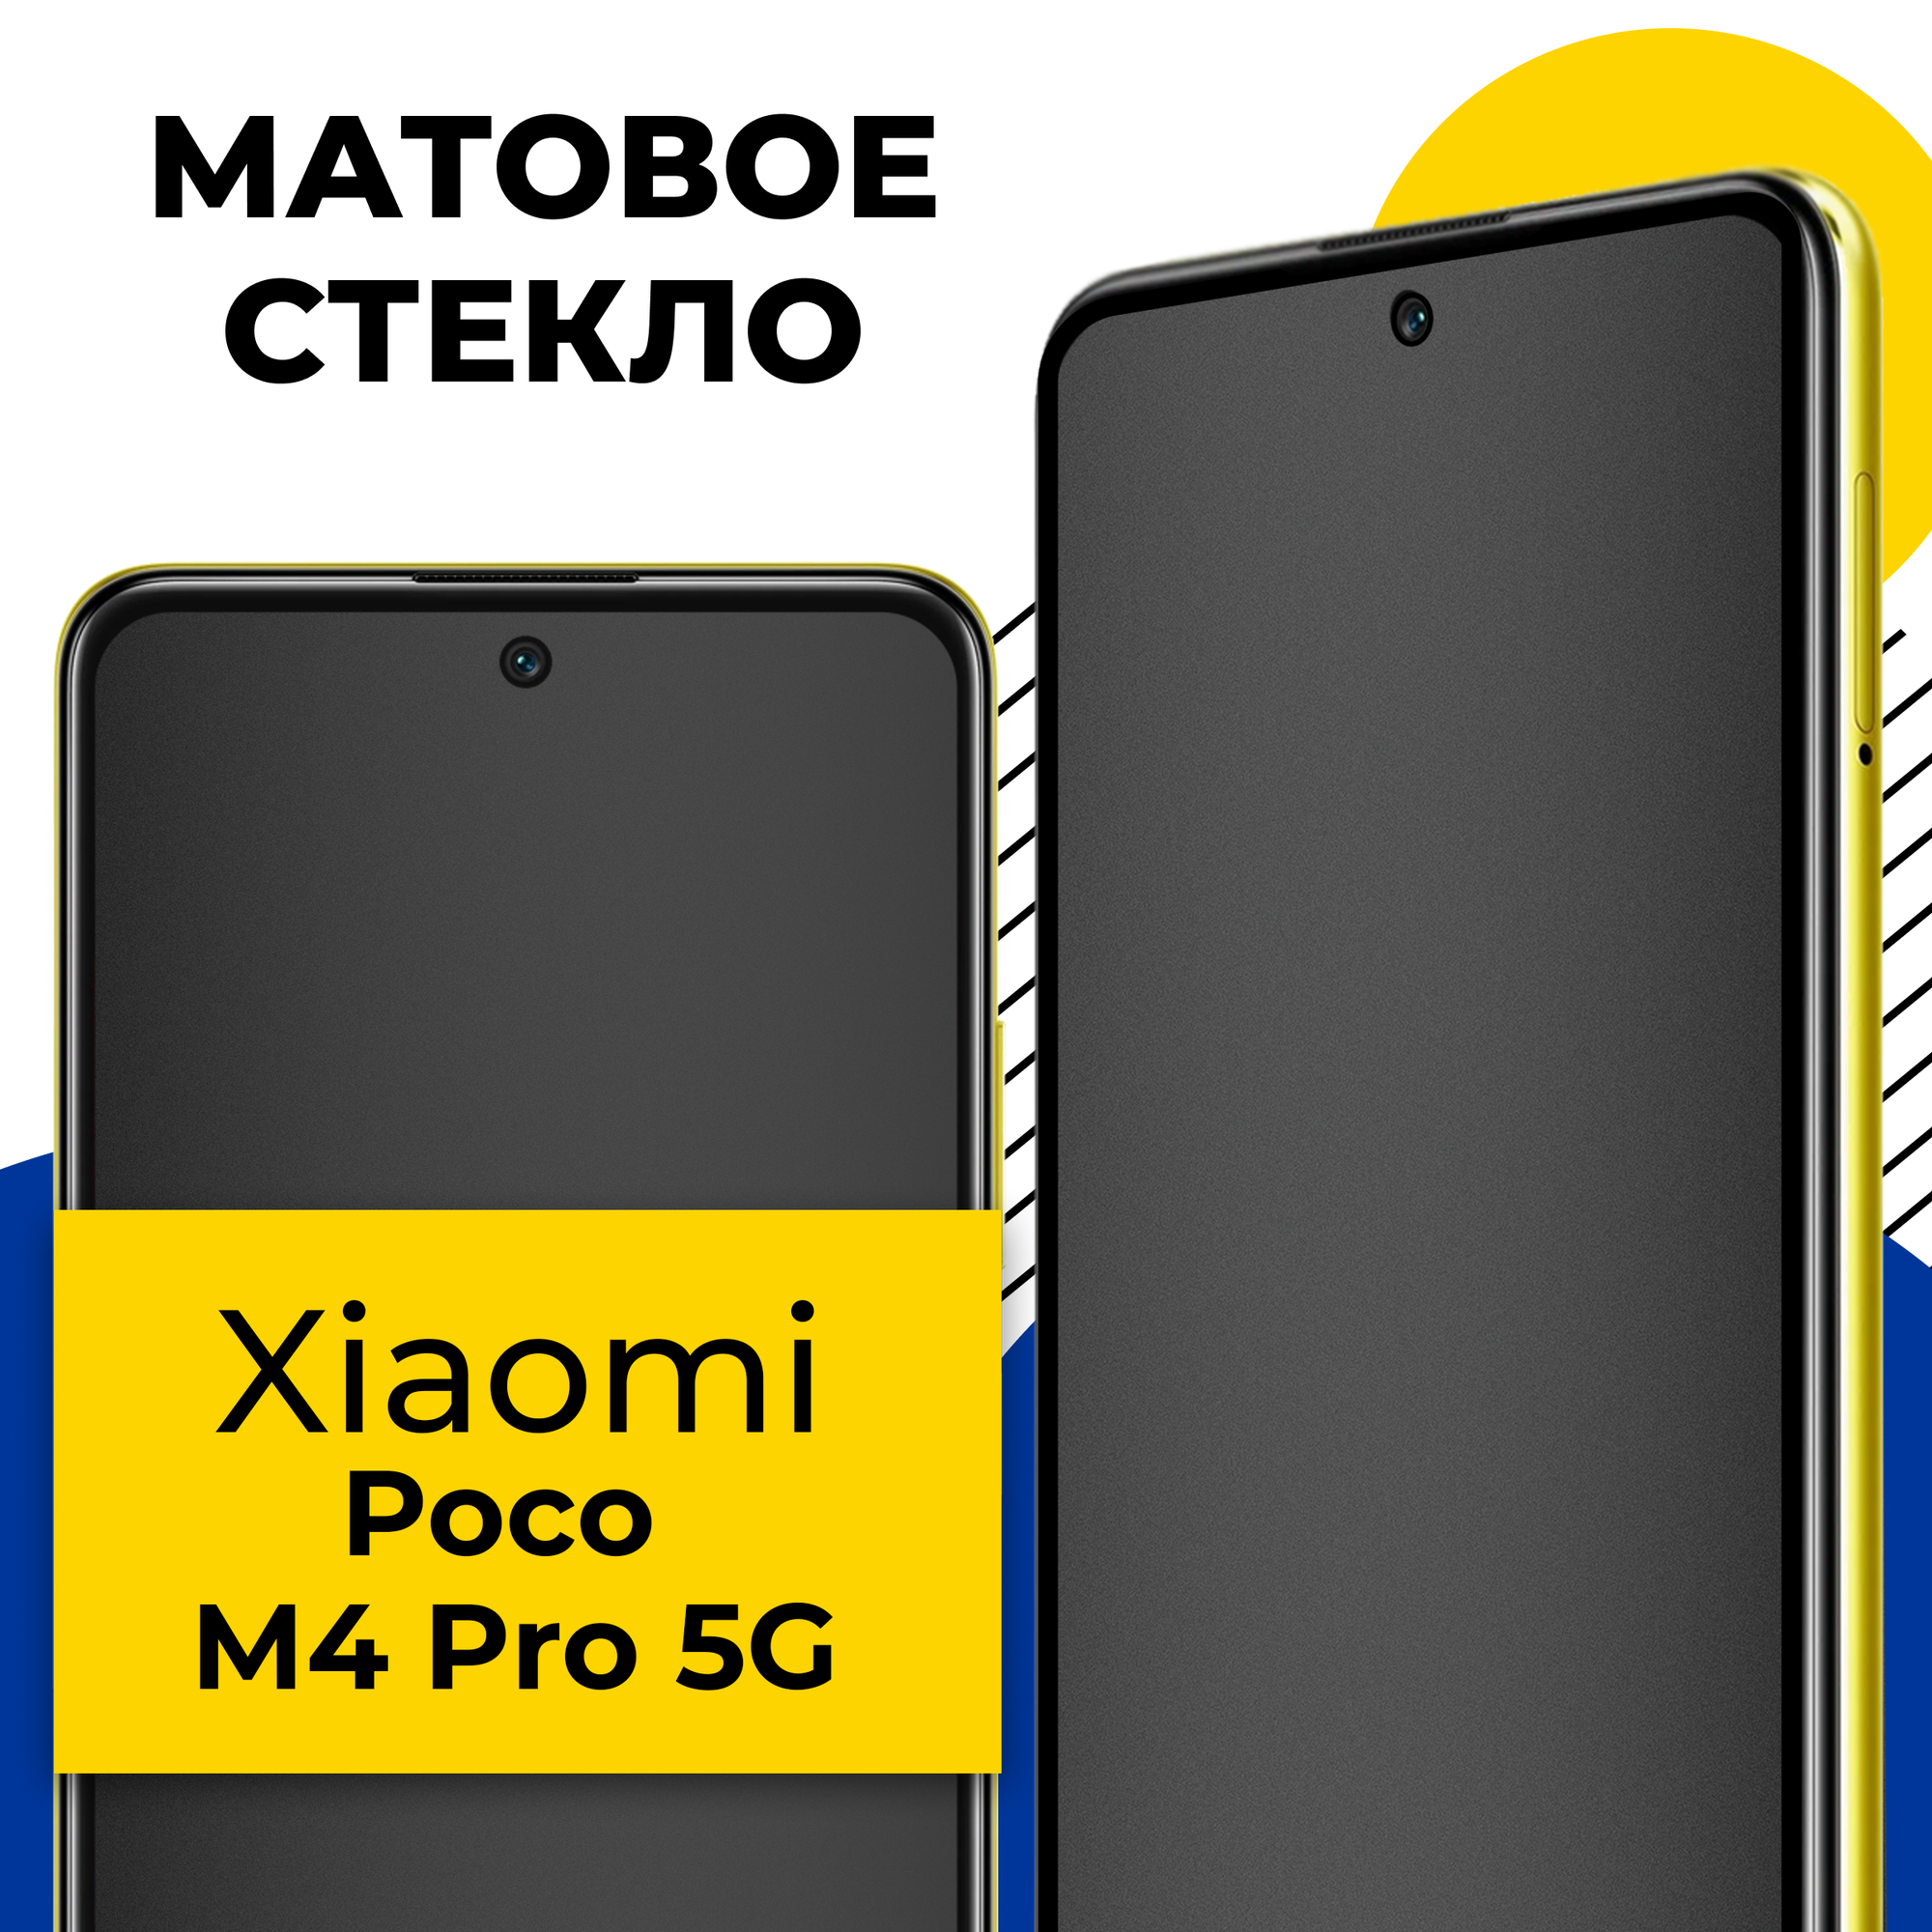 Матовое защитное стекло для телефона Xiaomi Poco M4 Pro 5G / Противоударное стекло 2.5D на смартфон Сяоми Поко М4 Про 5Г с олеофобным покрытием